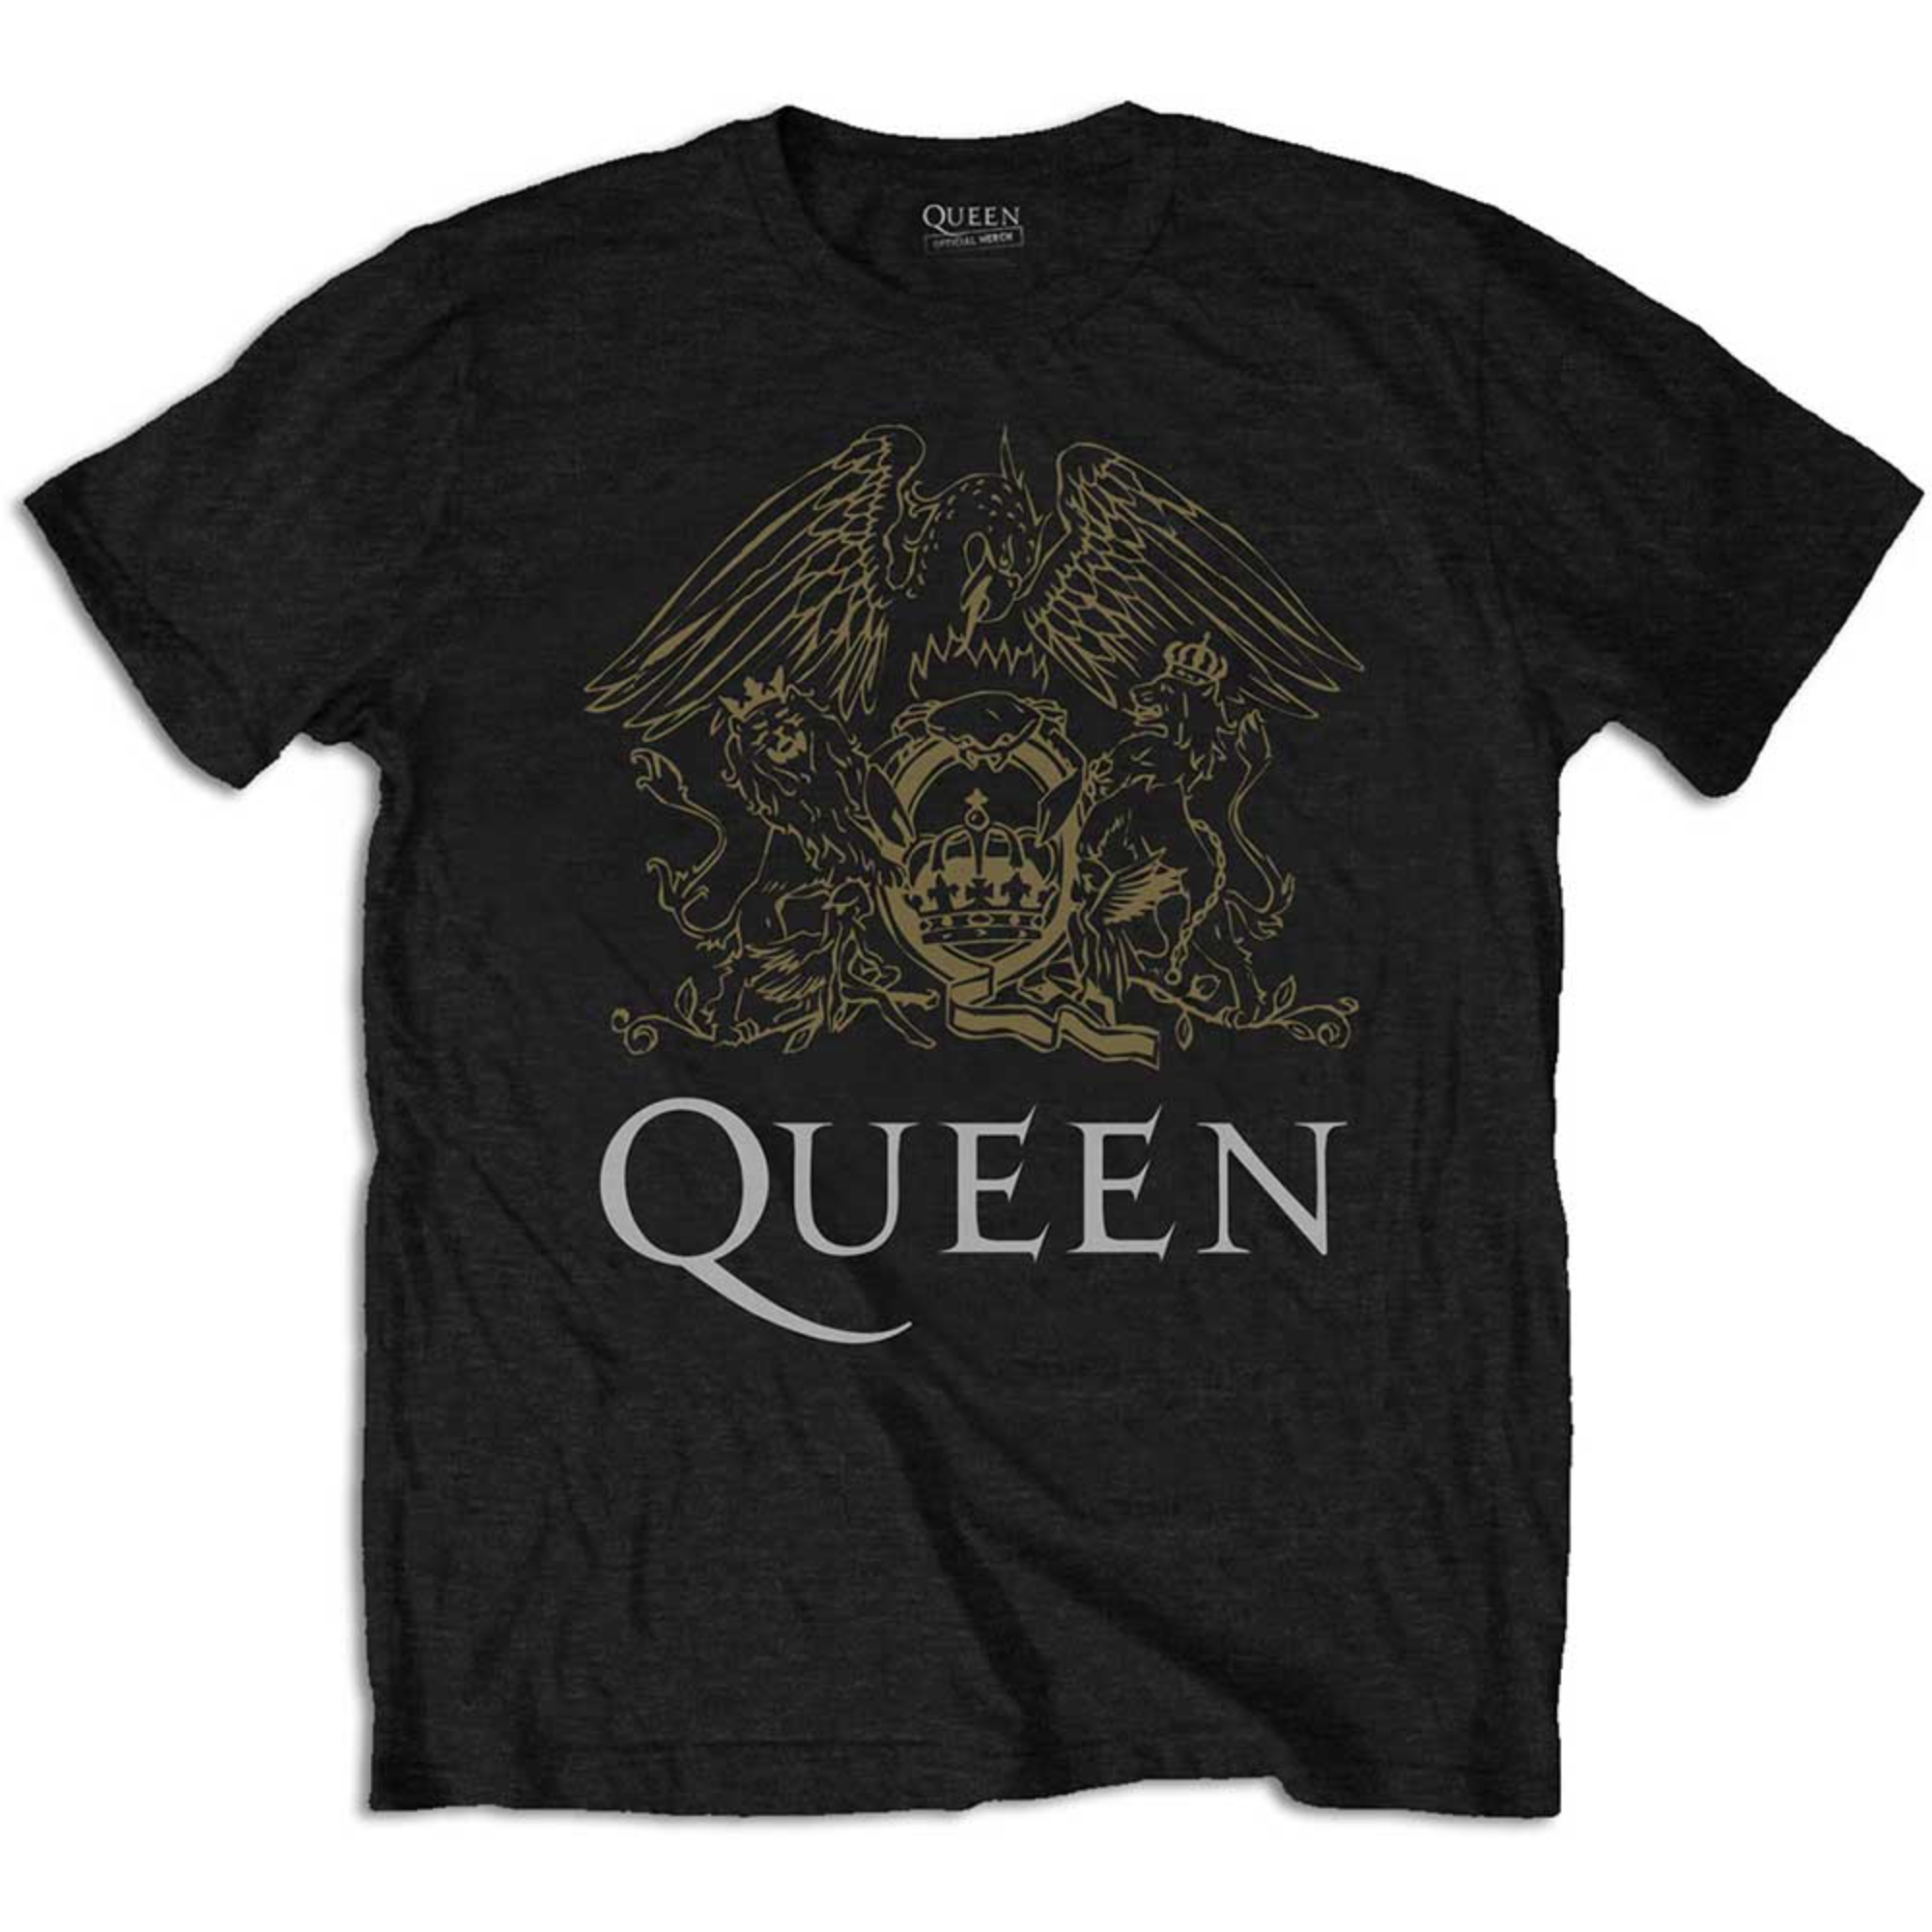 Official Band Concert Metal Tee Festival T-shirt Unisex | Music eBay Merch Rock Mens